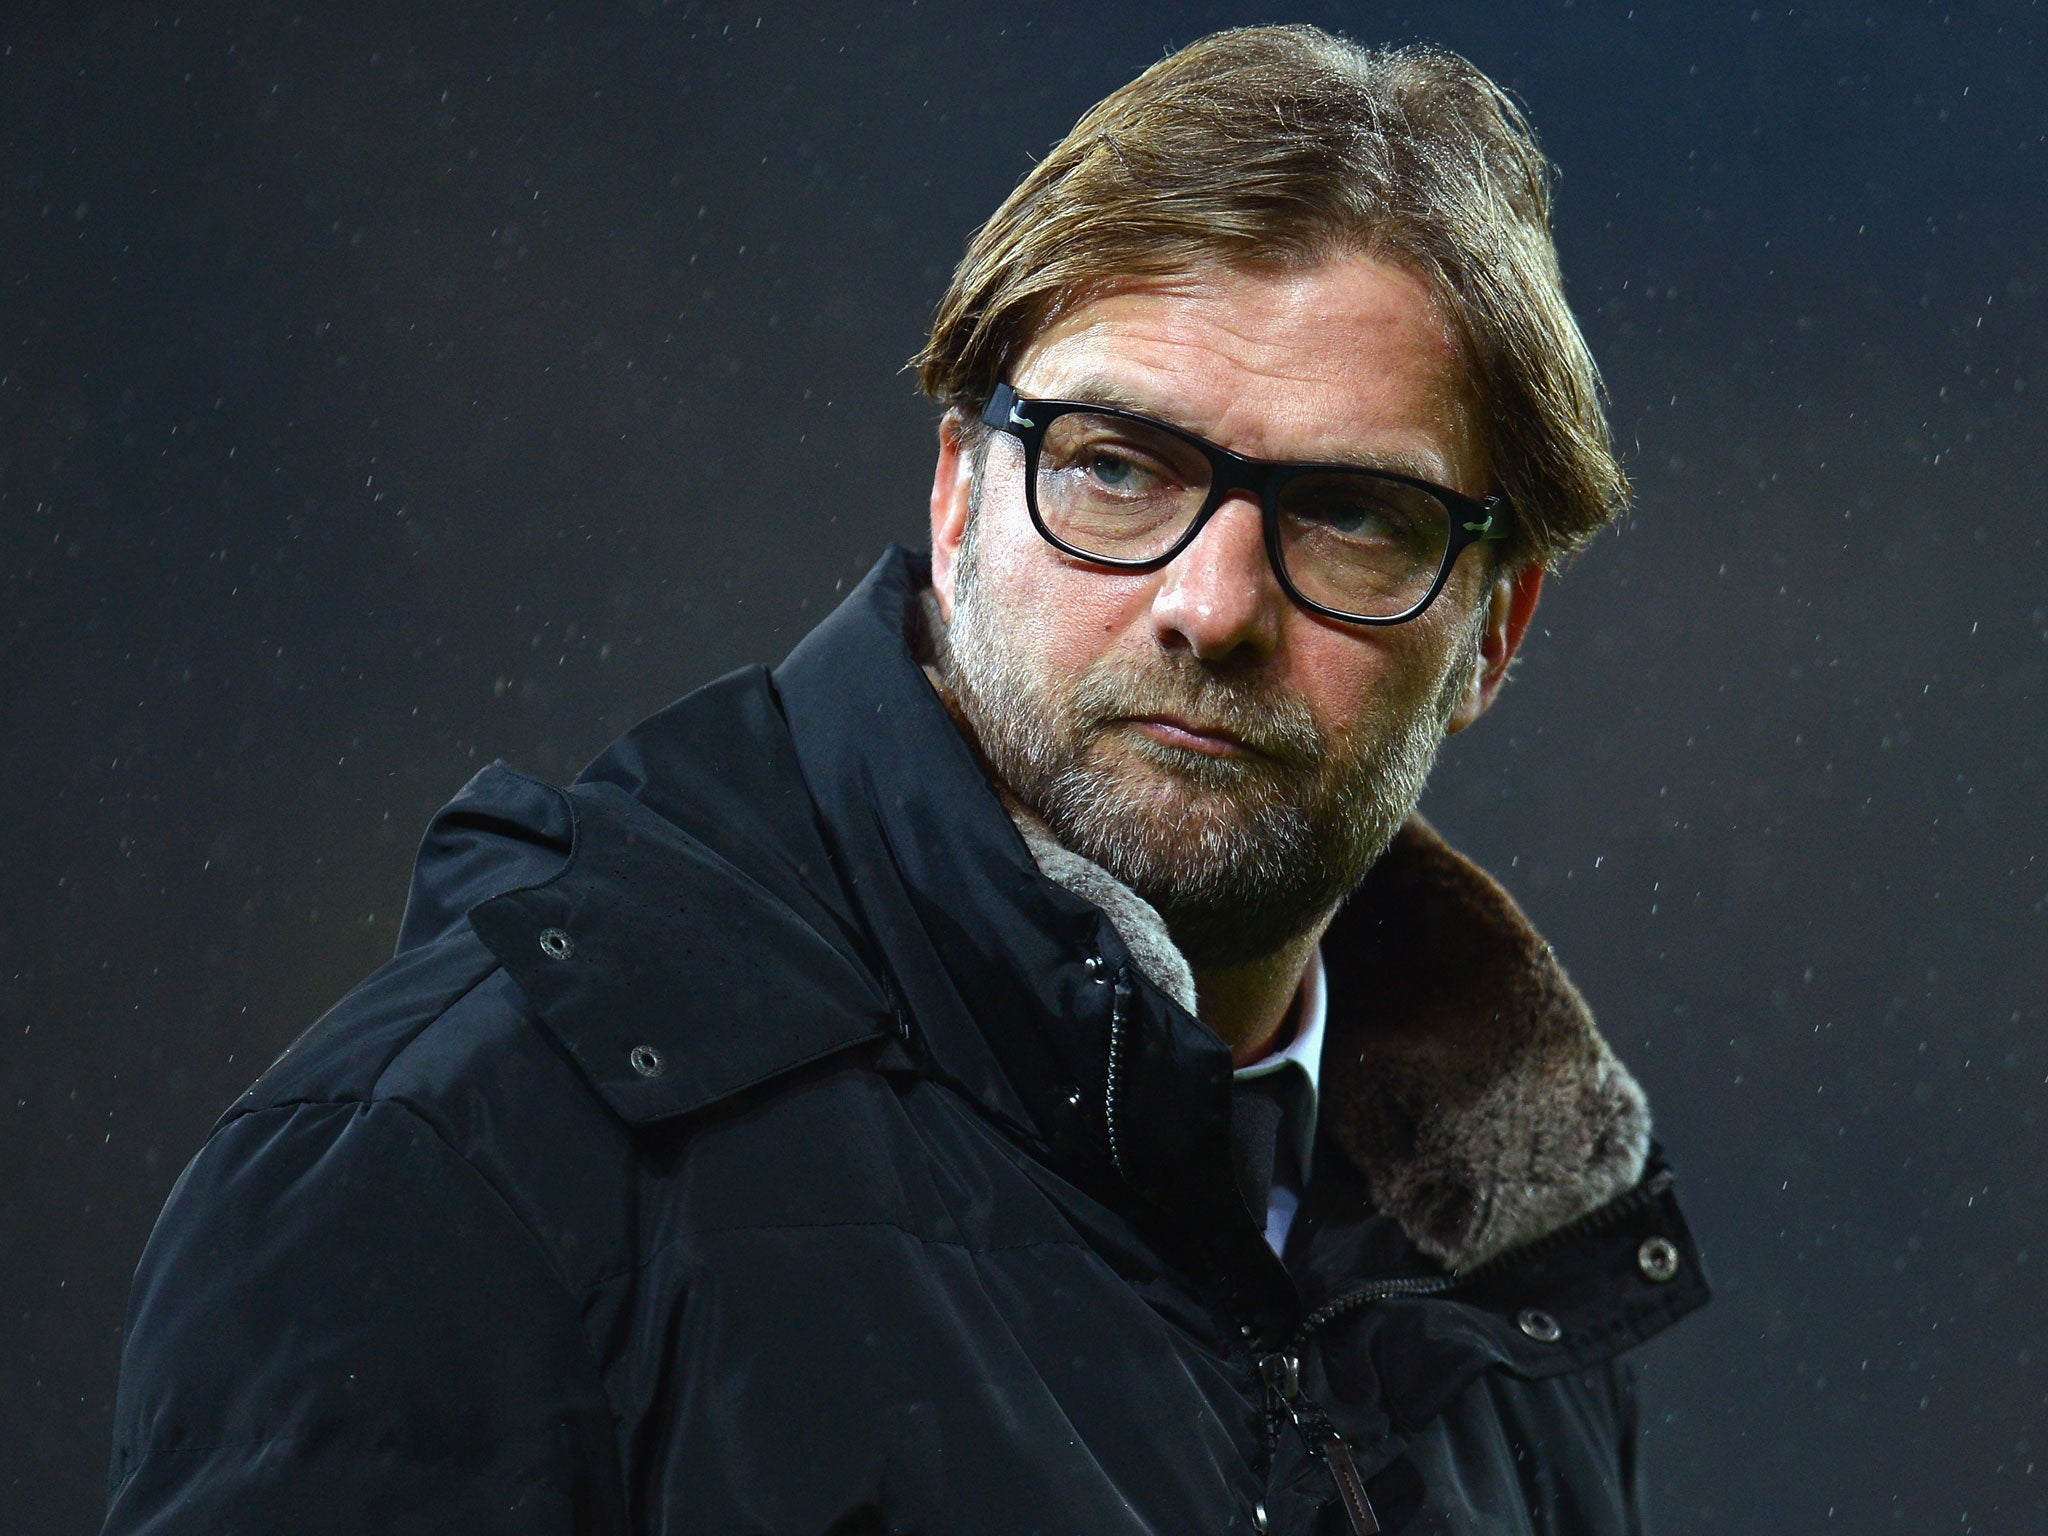 Jurgen Klopp looks on during Borussia Dortmund's 1-0 defeat by Arsenal on Wednesday night